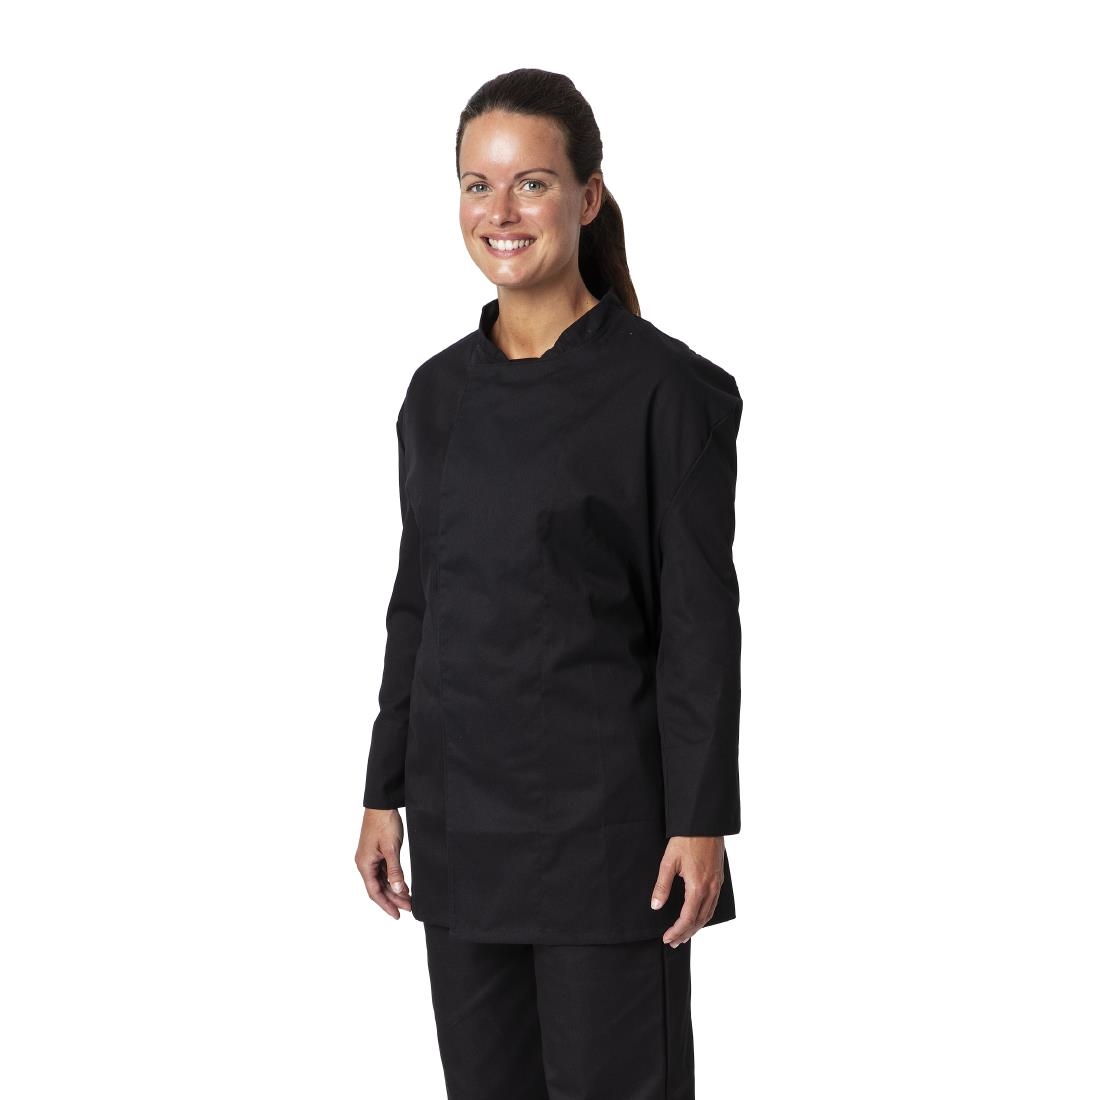 Whites Unisex Atlanta Chef Jacket Black Teflon Size S